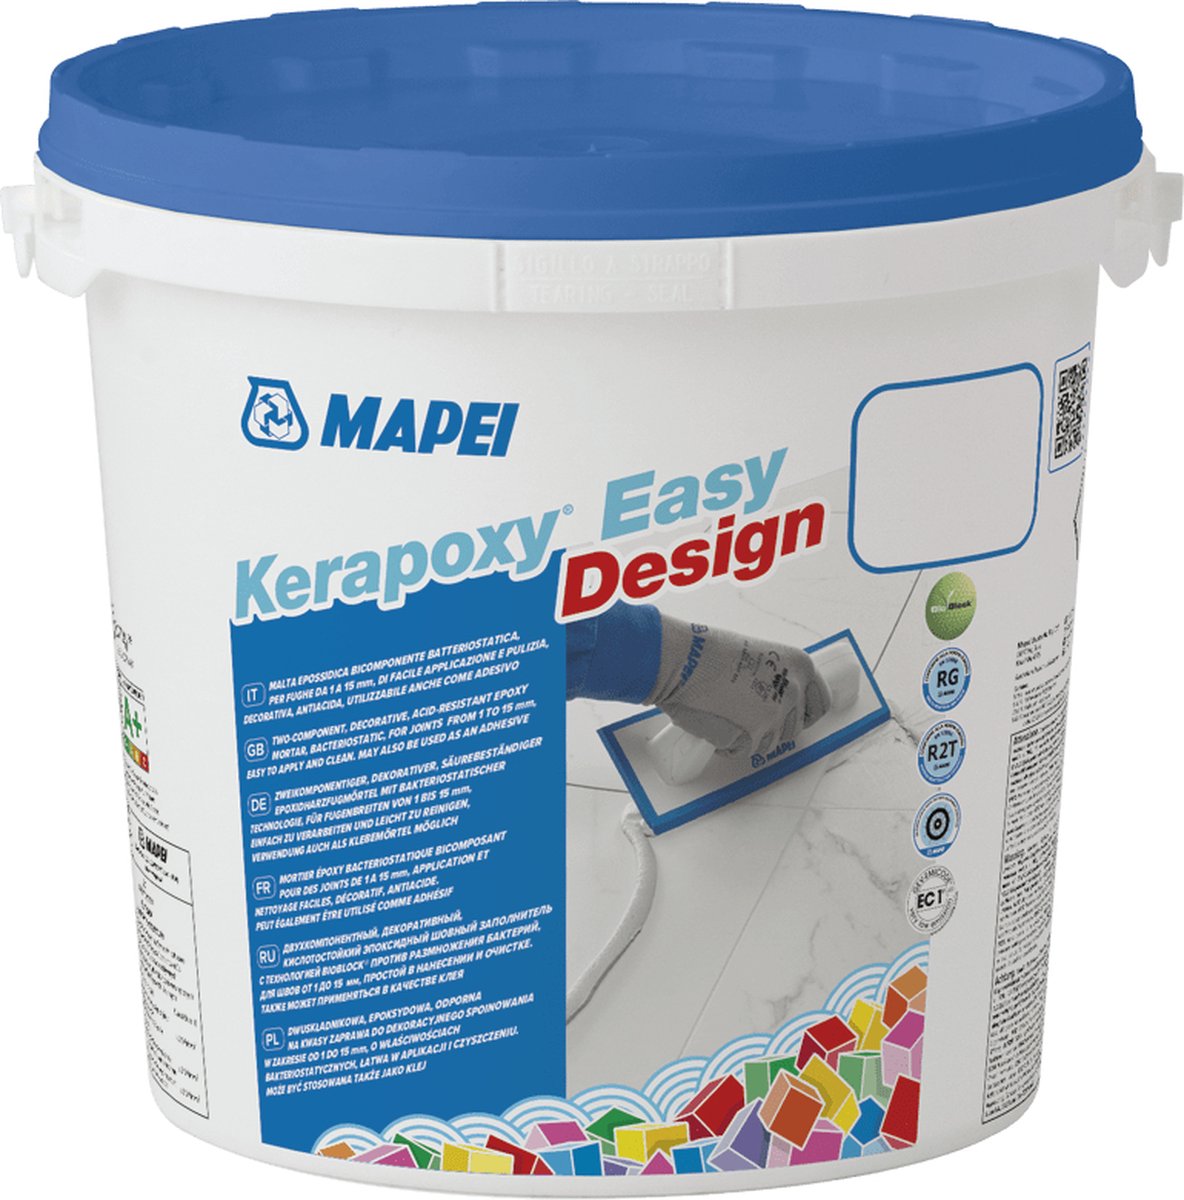 Mapei Kerapoxy Easy Design Voegmortel - Voor Keramische Tegels & Natuursteen - Kleur 100 Wit - 3 kg - Mapei